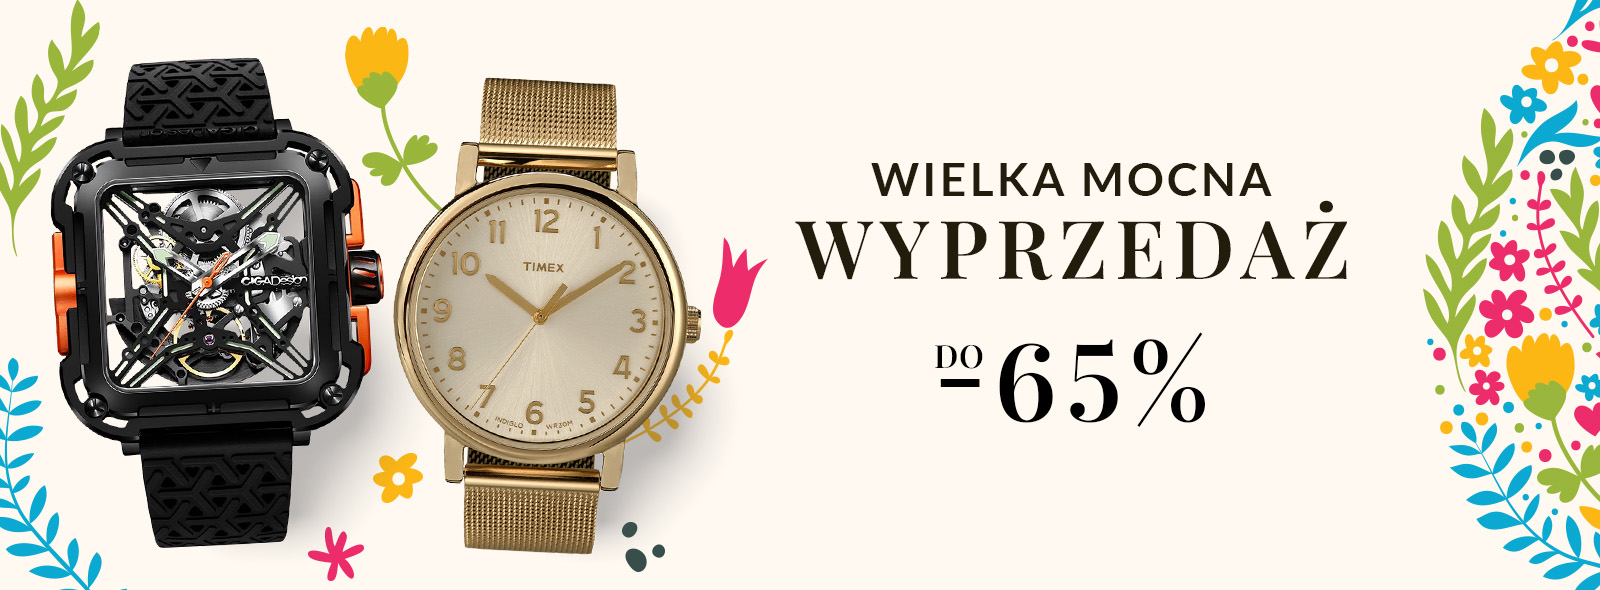 Wielka Mocna Wyprzedaż: Świąteczne zakupy w super cenach w FabrykaZegarków.pl